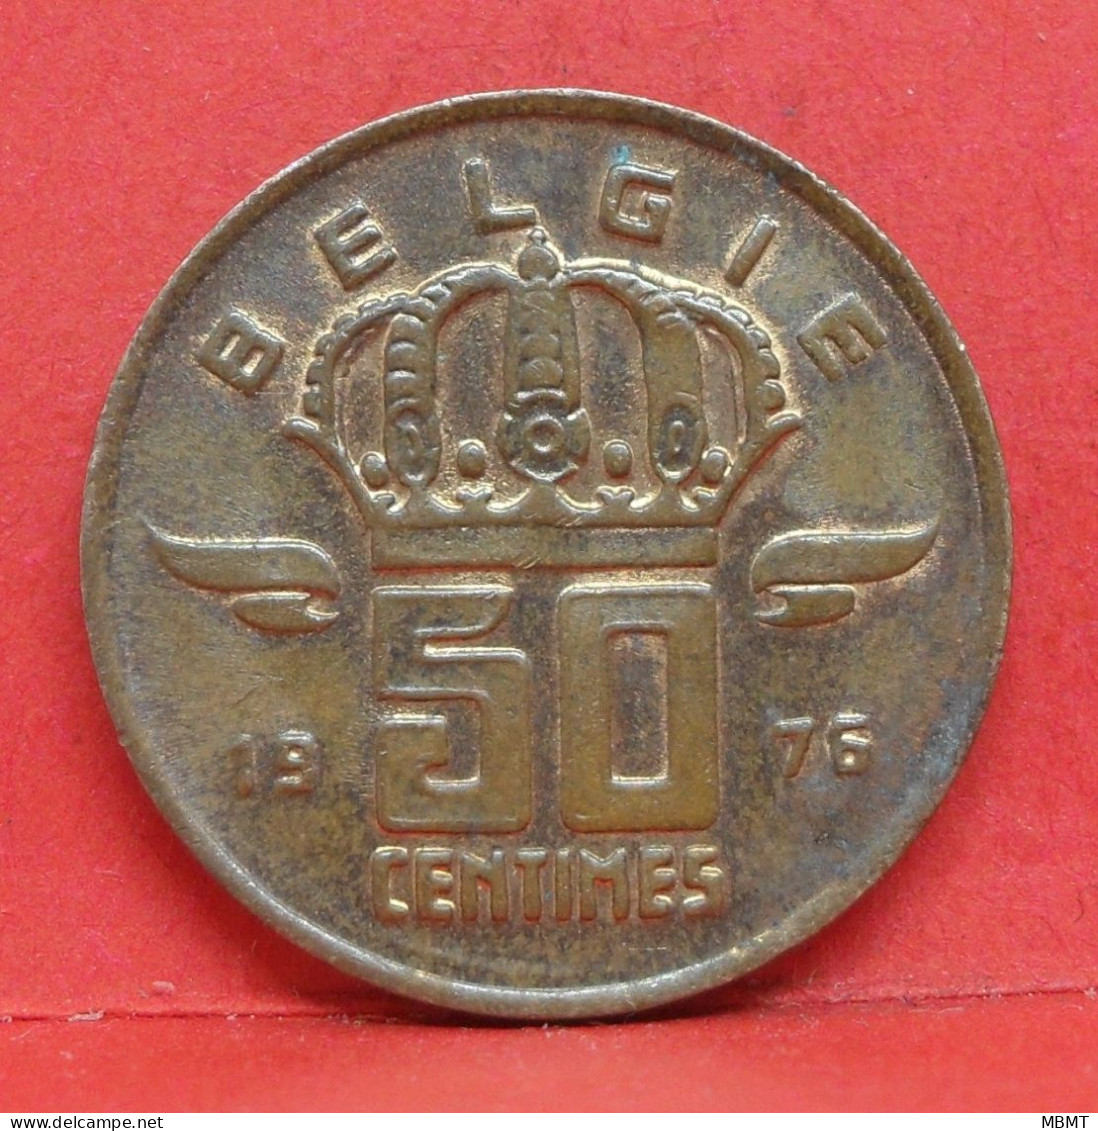 50 Centimes 1975 - SUP - Pièce Monnaie Belgie - Article N°1893 - 50 Cents